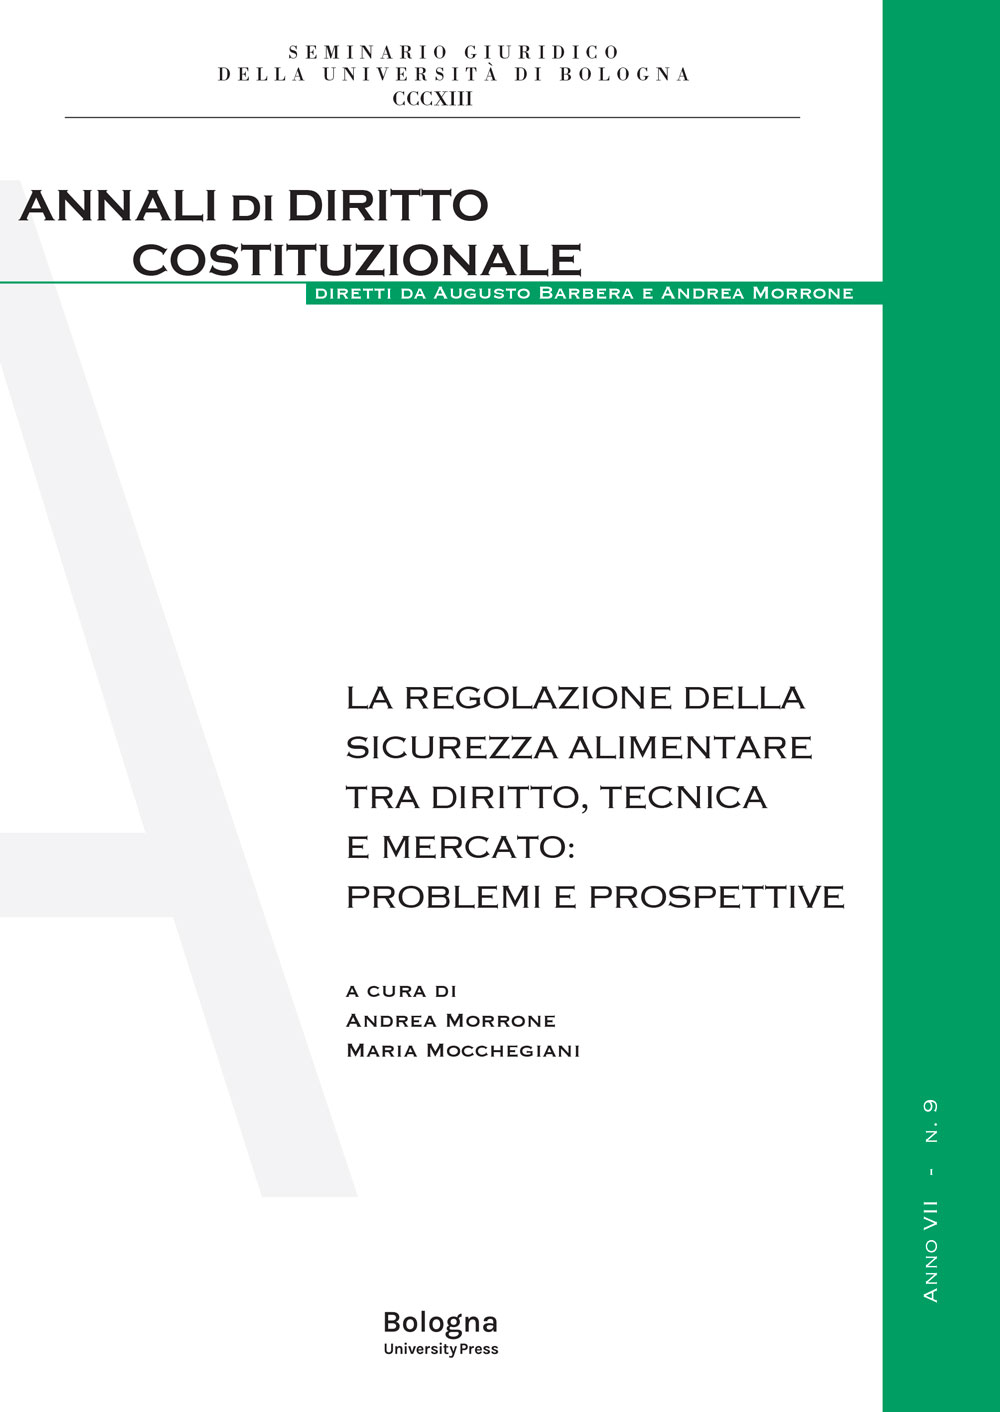 La regolazione della sicurezza alimentare tra diritto, tecnica e mercato: problemi e prospettive - Bologna University Press